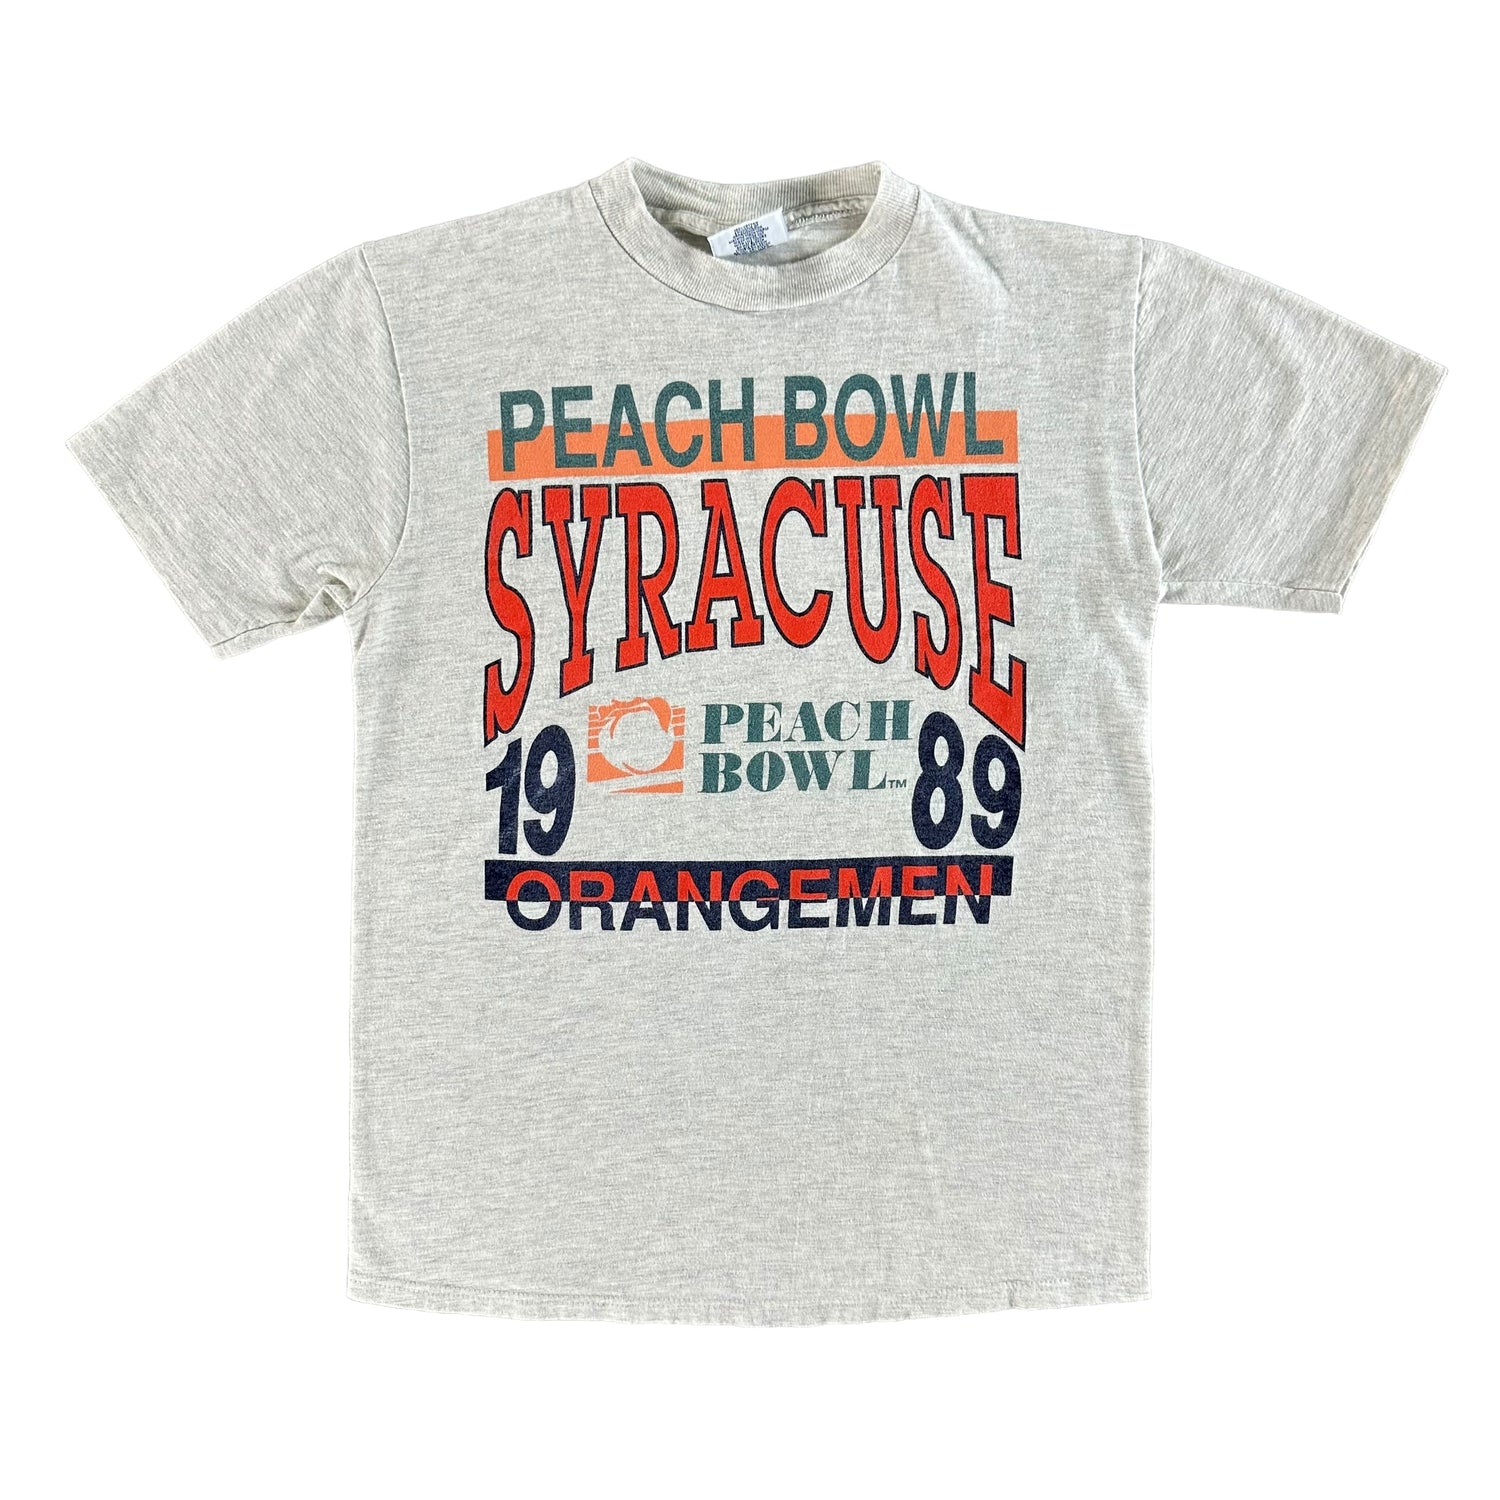 Vintage 1980s Syracuse University T-shirt size Medium